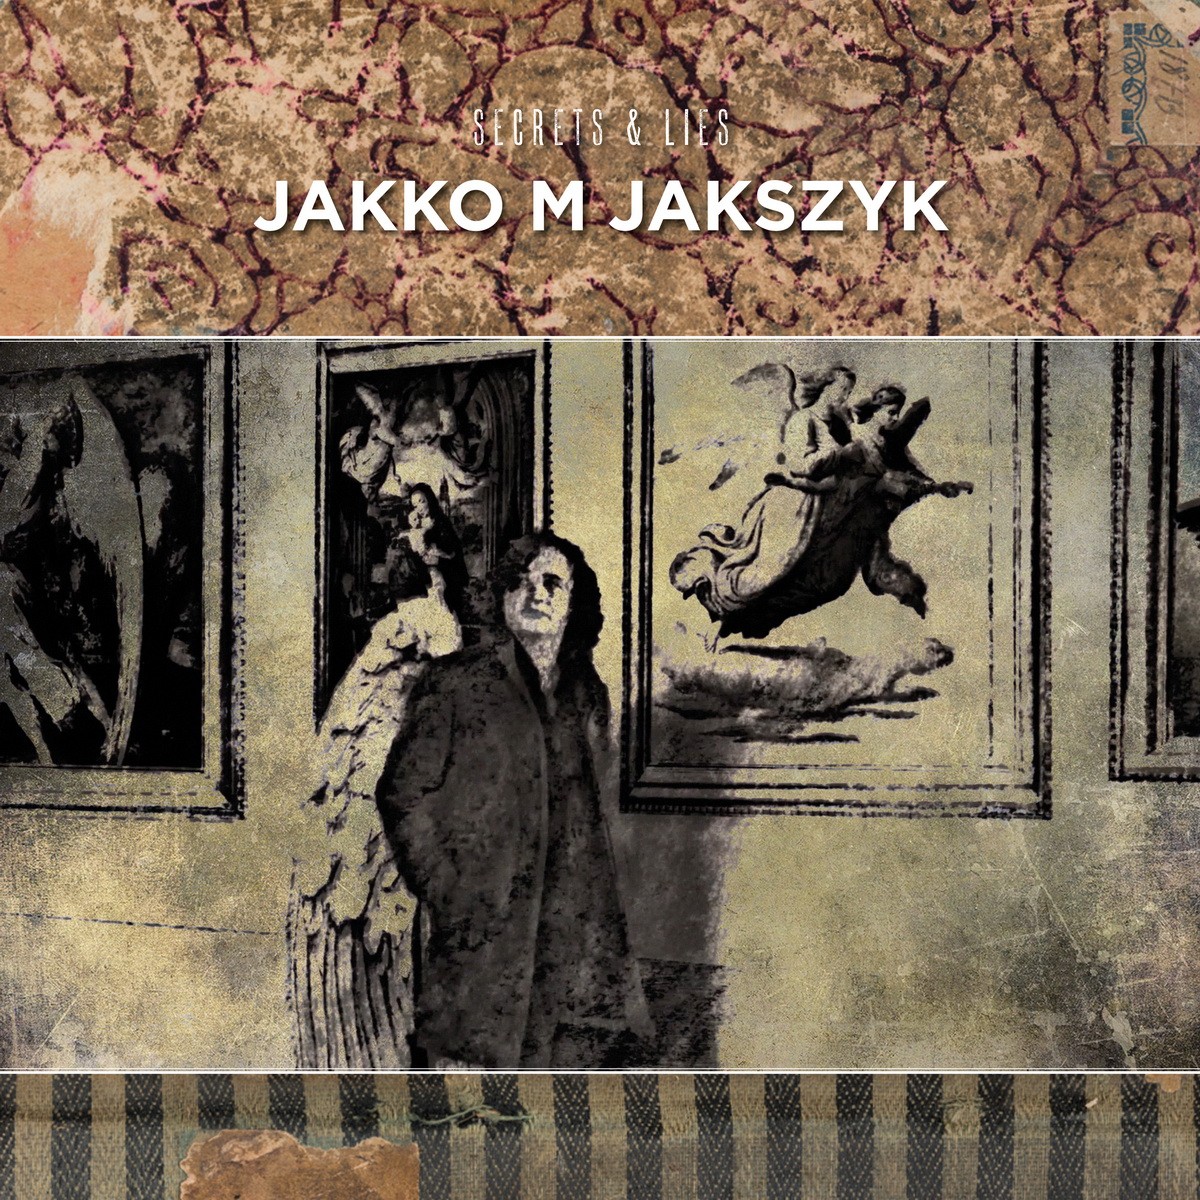 Qu'écoutez-vous en ce moment ? - Page 12 Jakko-M-Jakszyk-Secrets-Lies-1